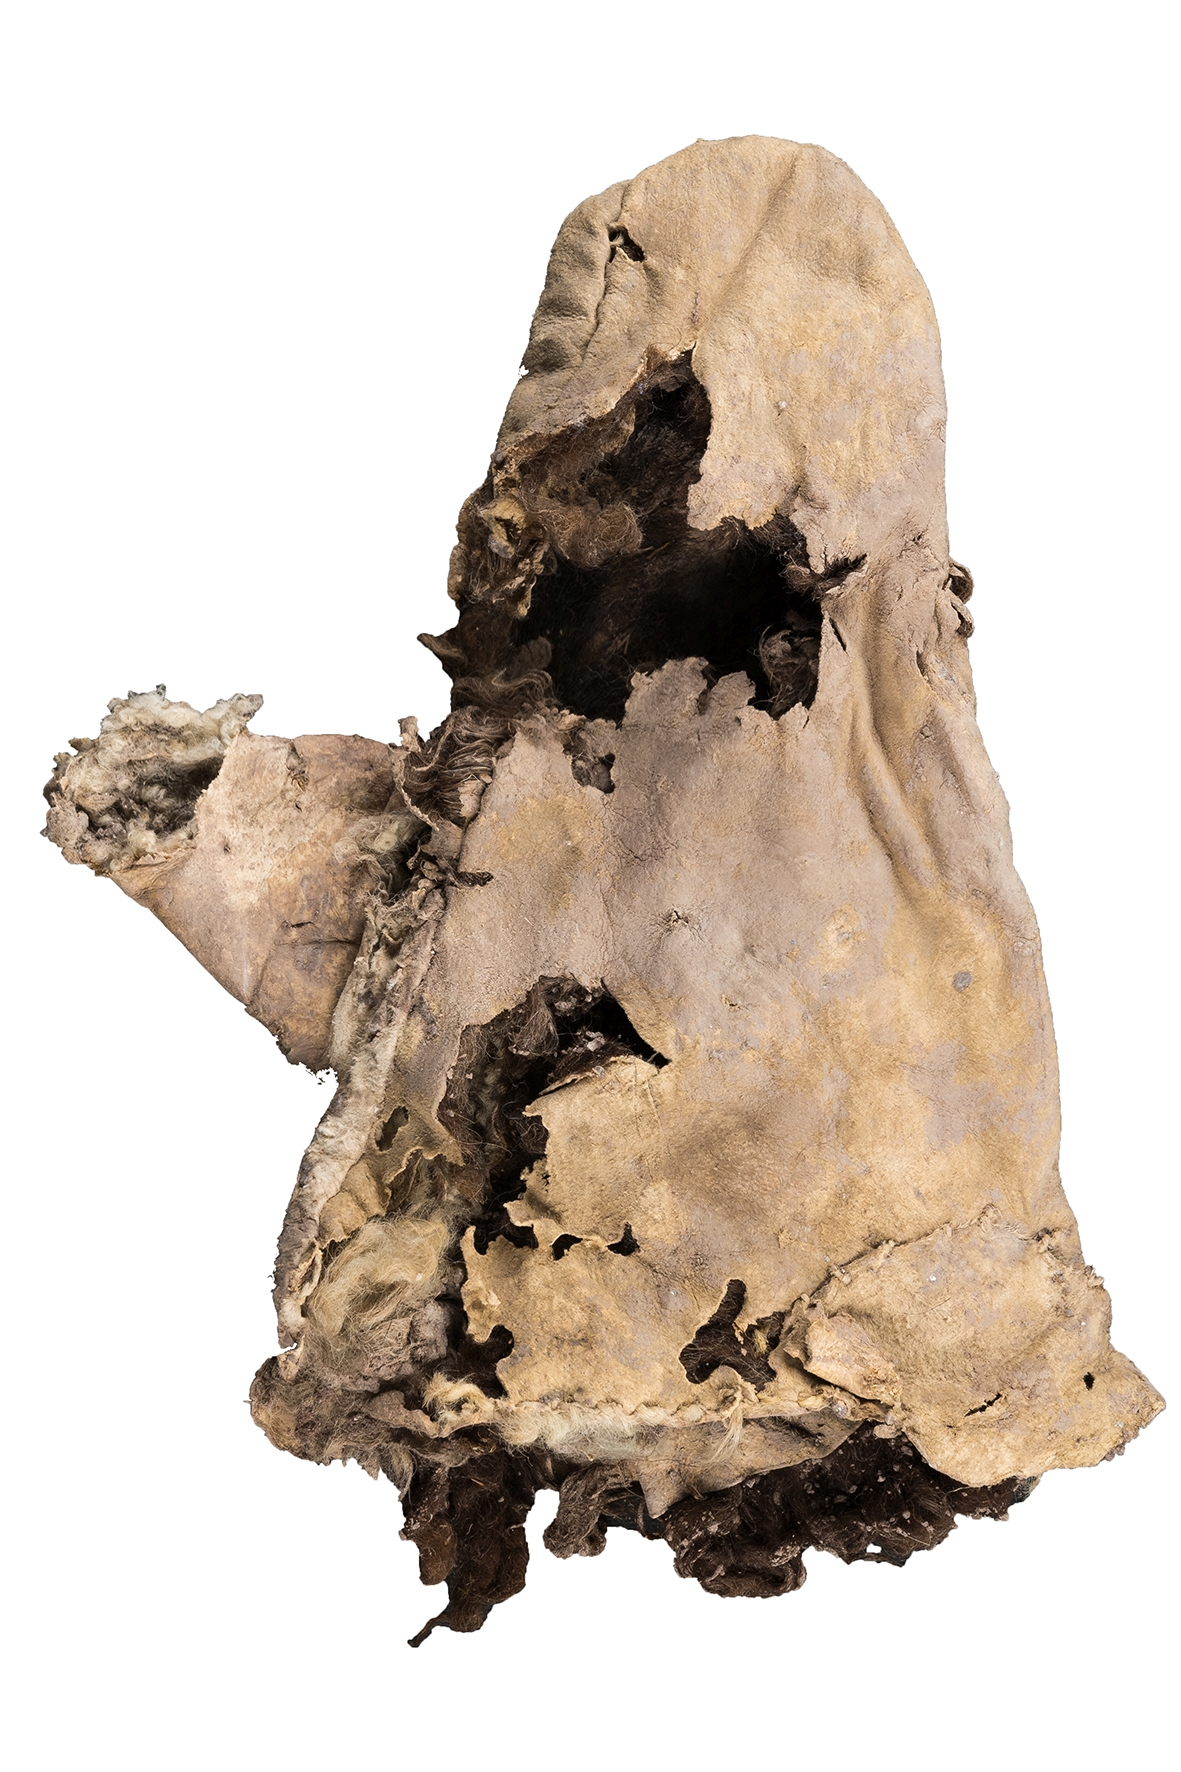 sasanidischer Handschuh 1500 Jahre alt gefunden im Salzberg Douzlakh C Deutsches Bergbau Museum Bochum